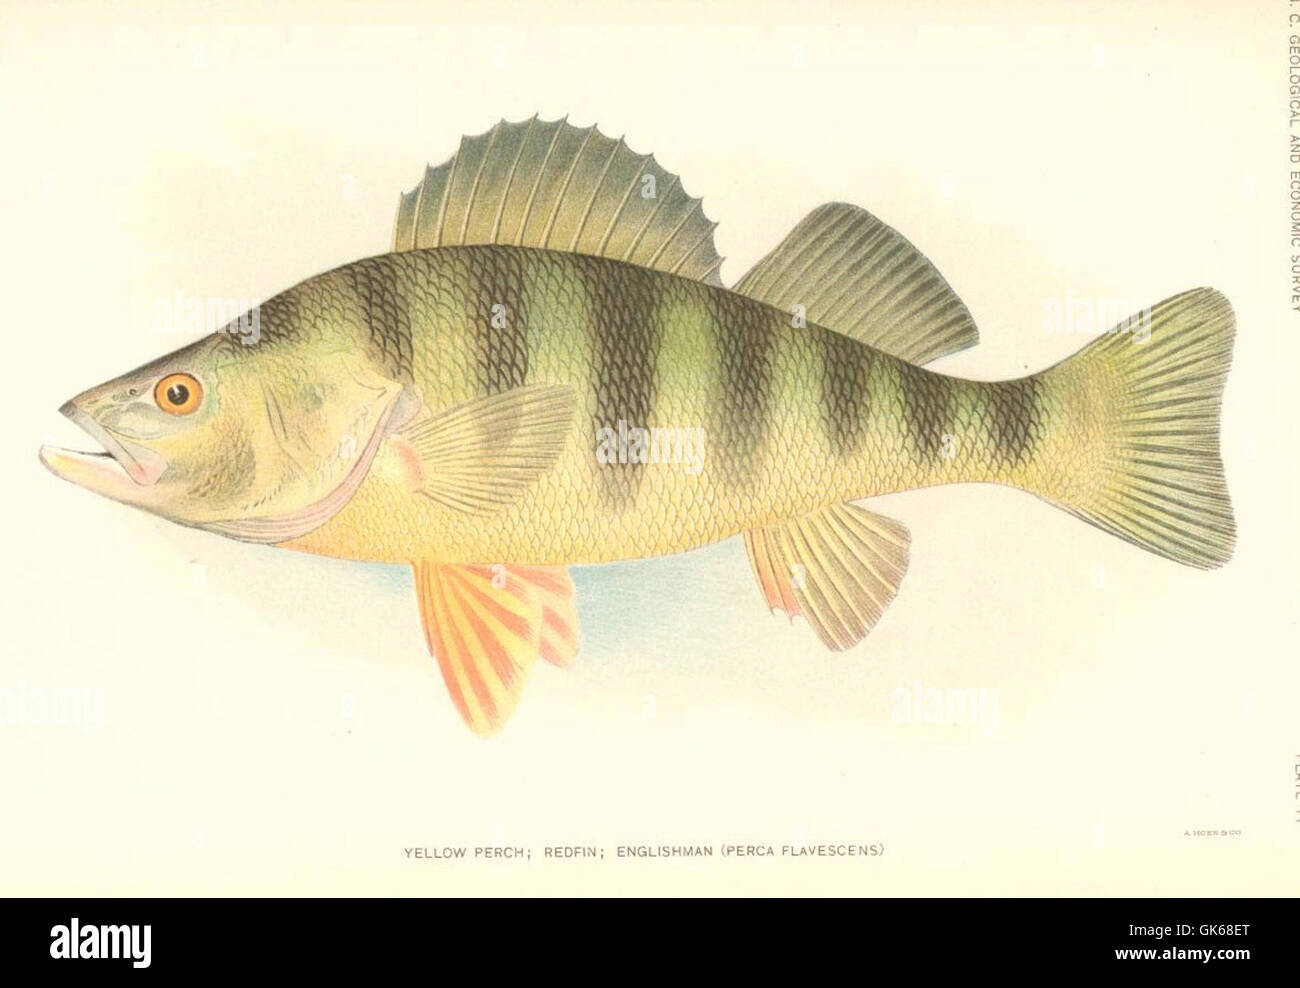 51443 giallo Pesce persico; Redfin; inglese (Perce flavescens) Foto Stock